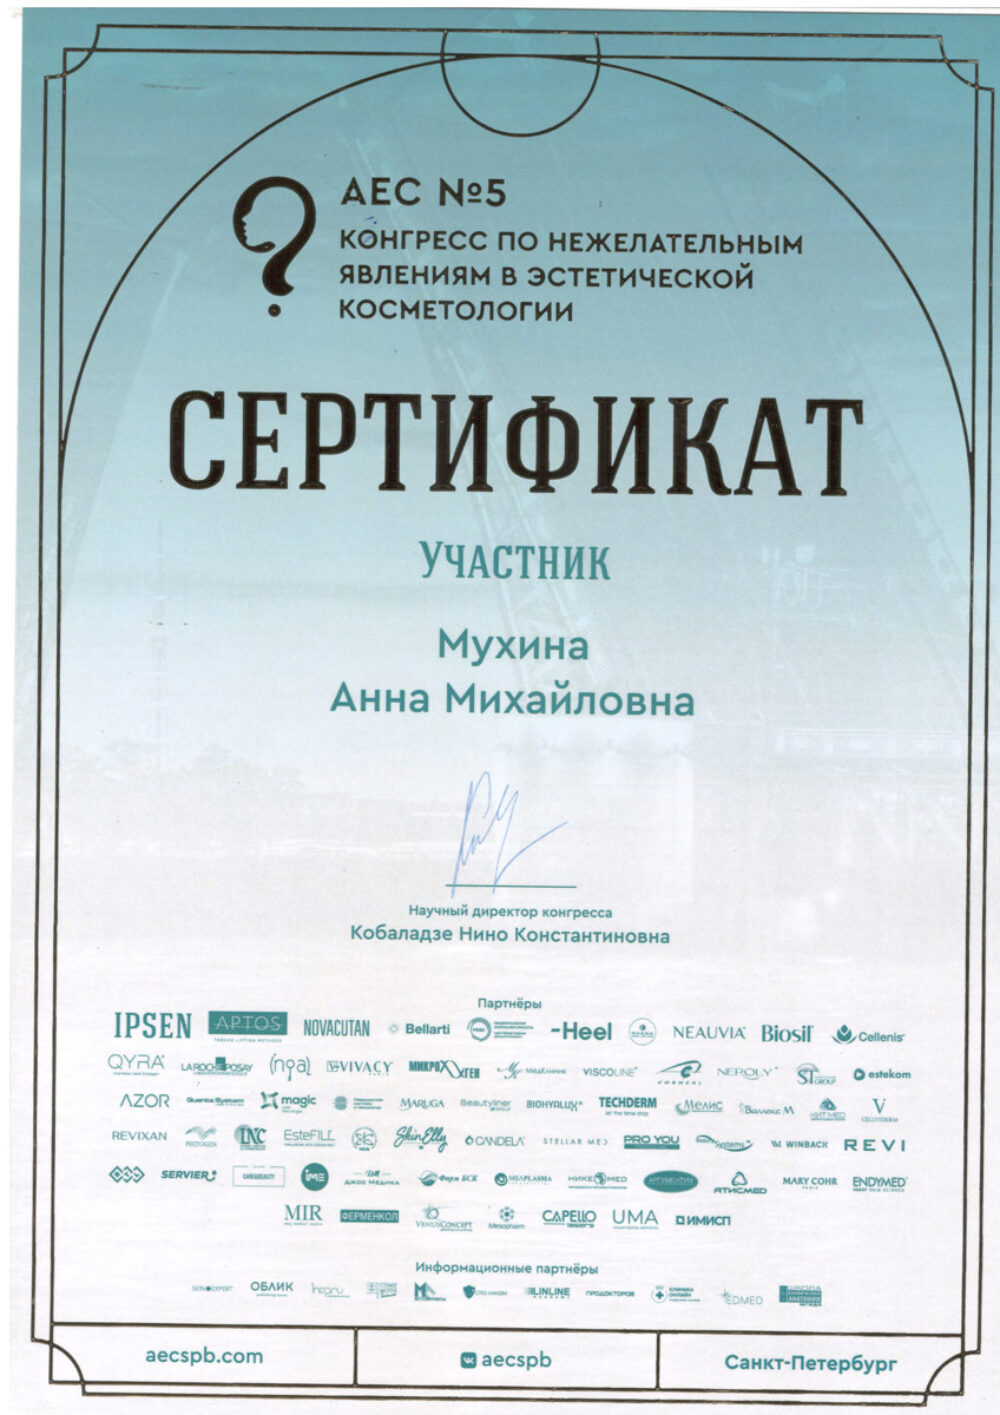 Сертификат - "Конгресс по нежелательным явлениям в эстетической косметологии". Мухина Анна Михайловна